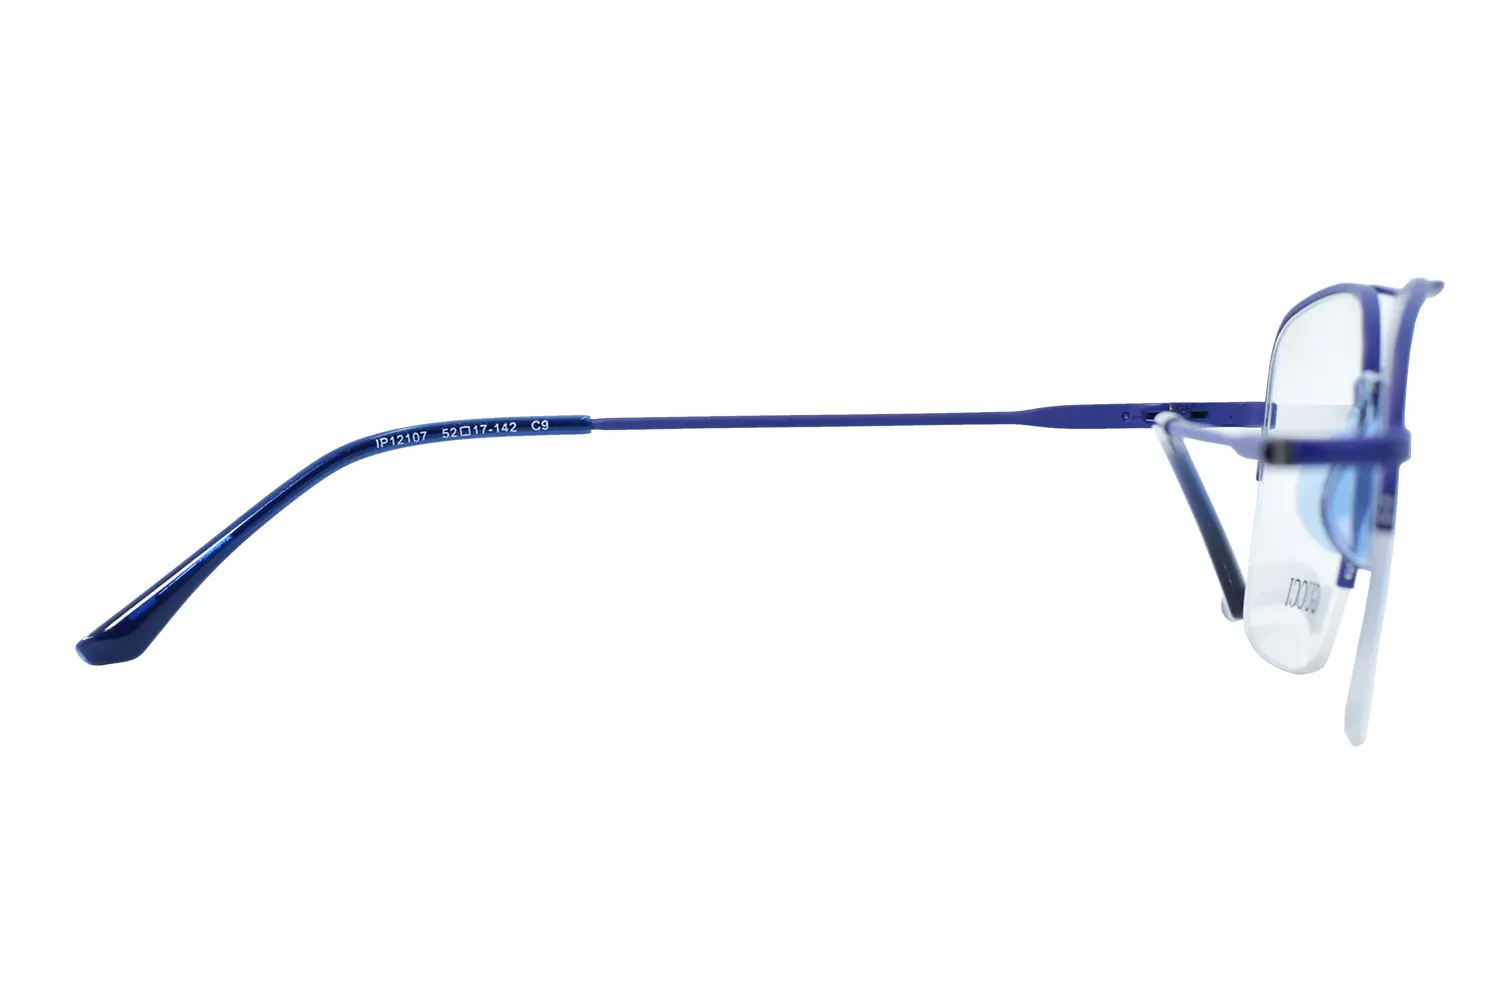 عینک طبی gucci مدل ip12107 c9 - دکترعینک